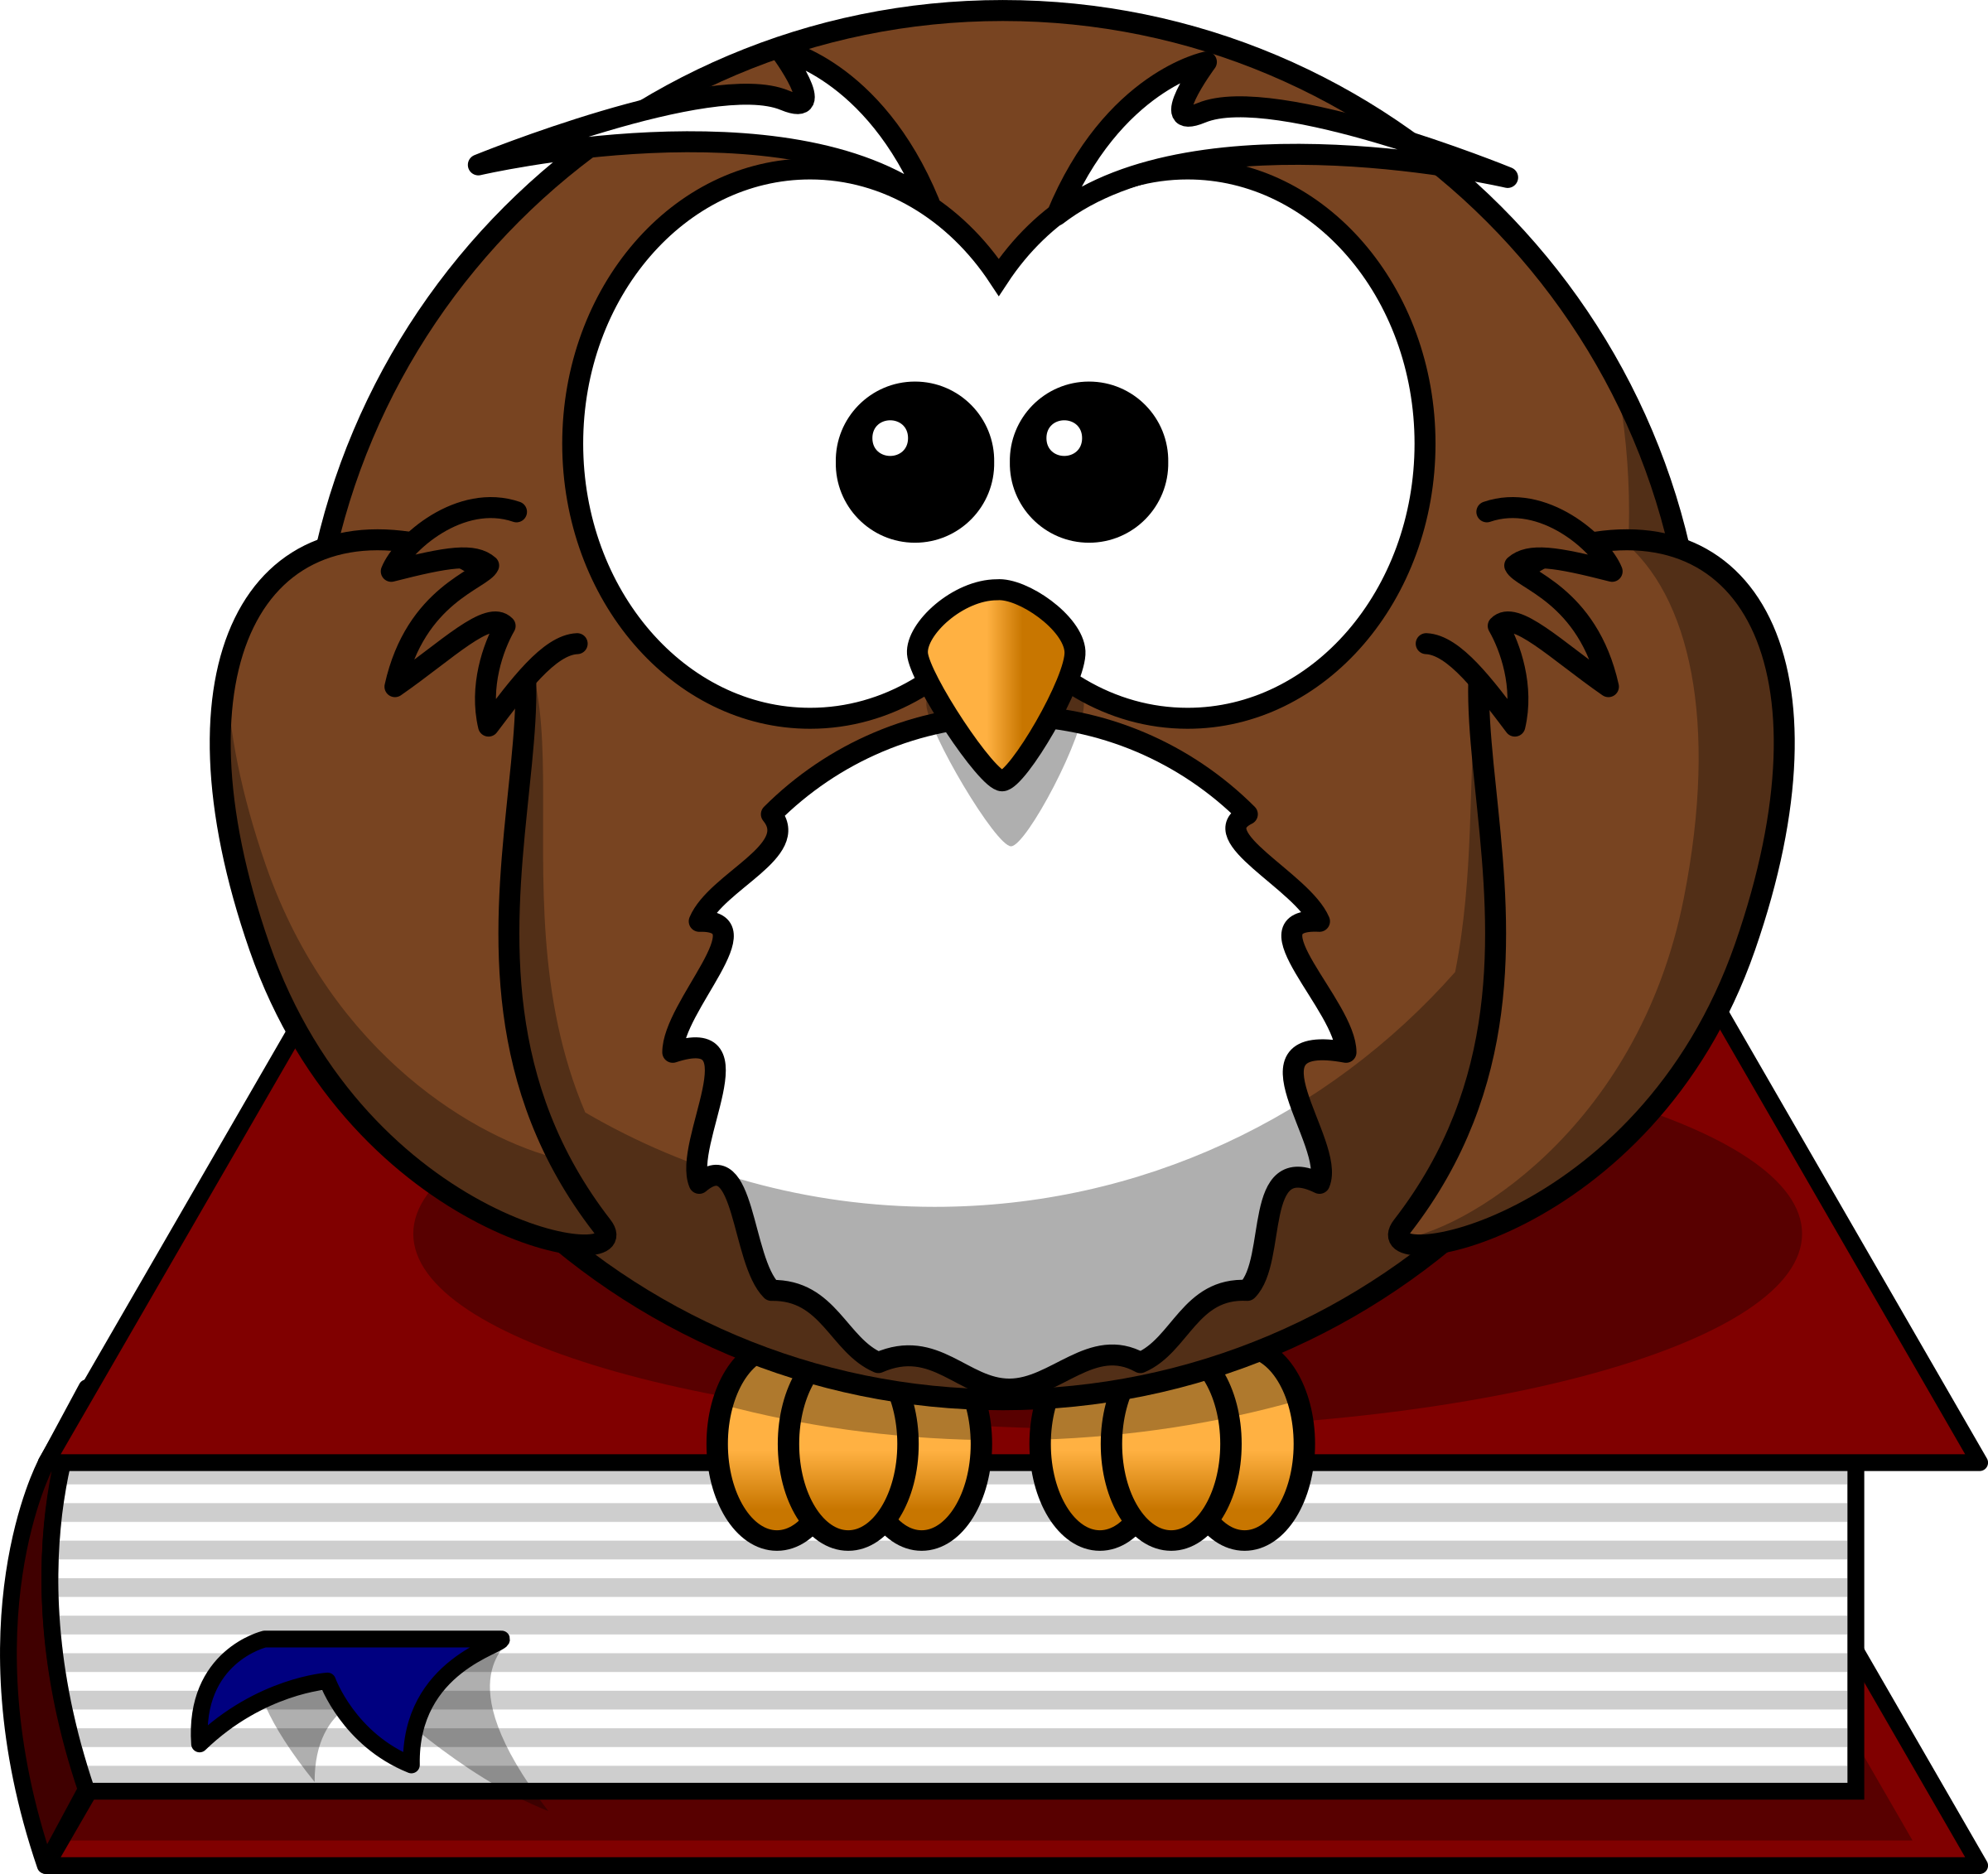 Cartoon Owl Sitting On A Book